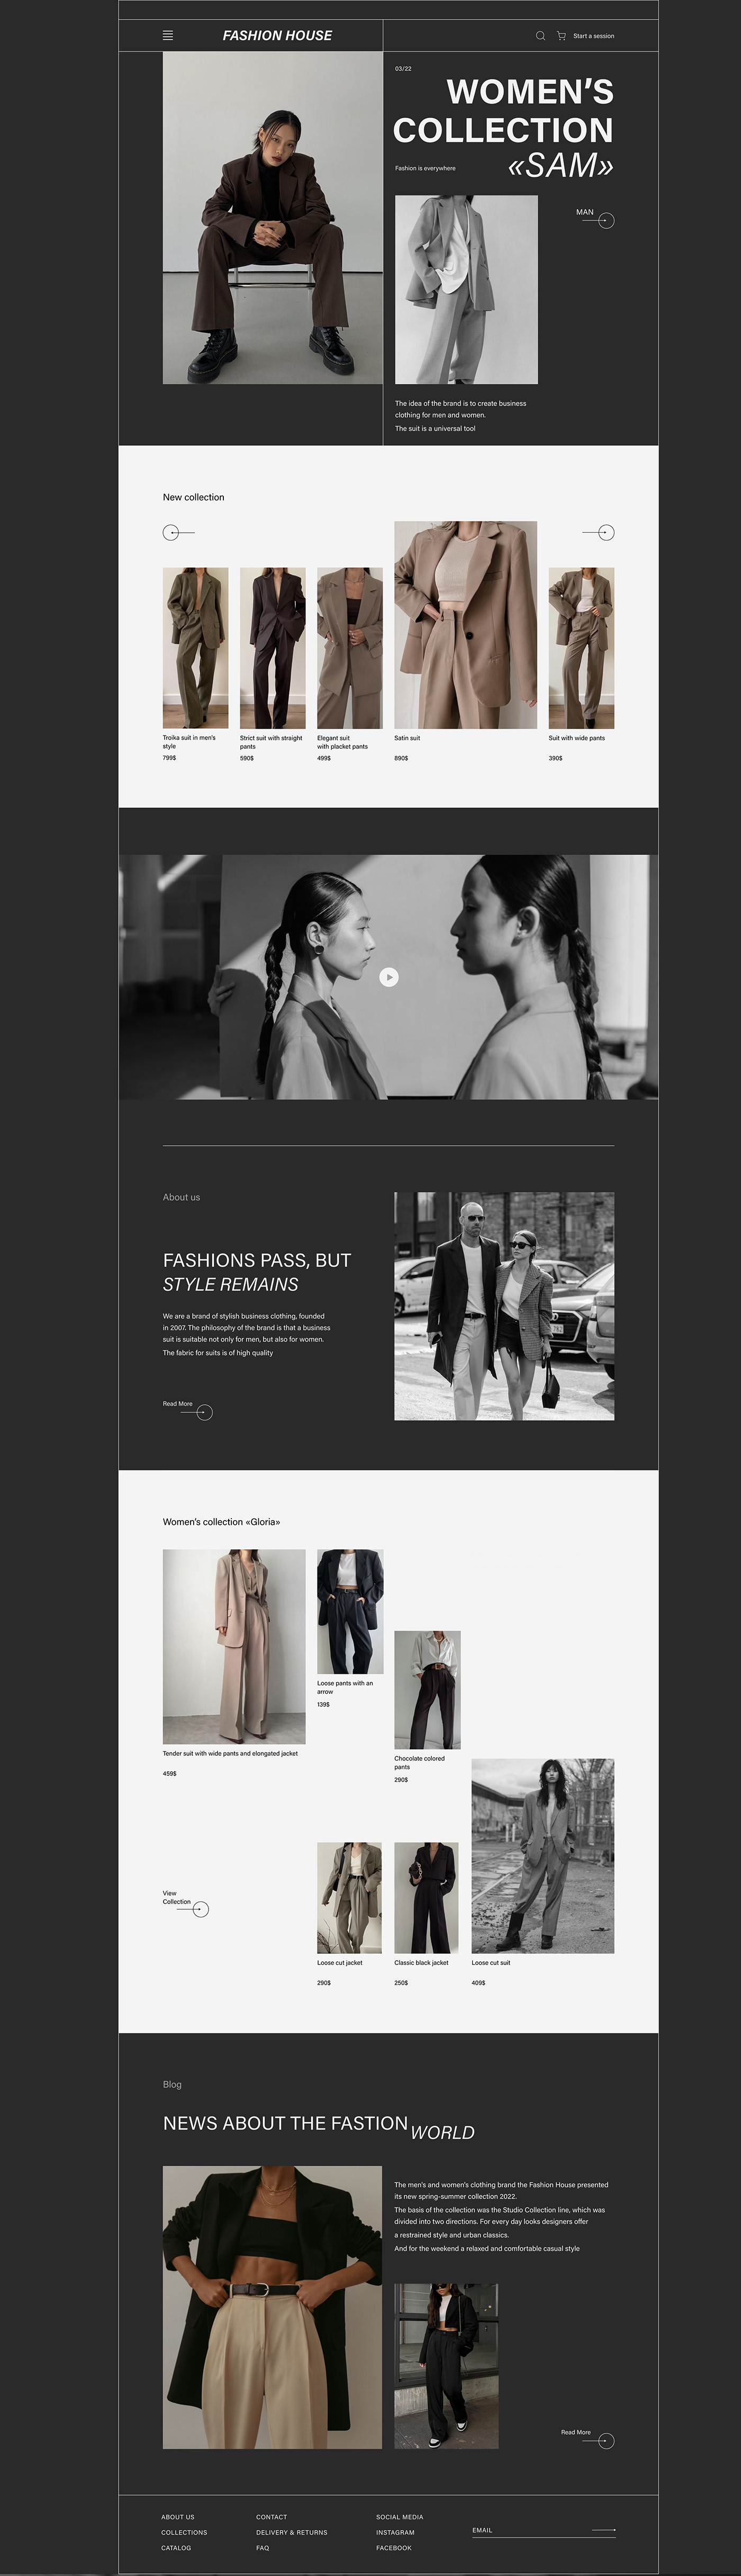 fashion design Figma Mobile app Online shop UI UI/UX user interface Web Design  Website Website Design